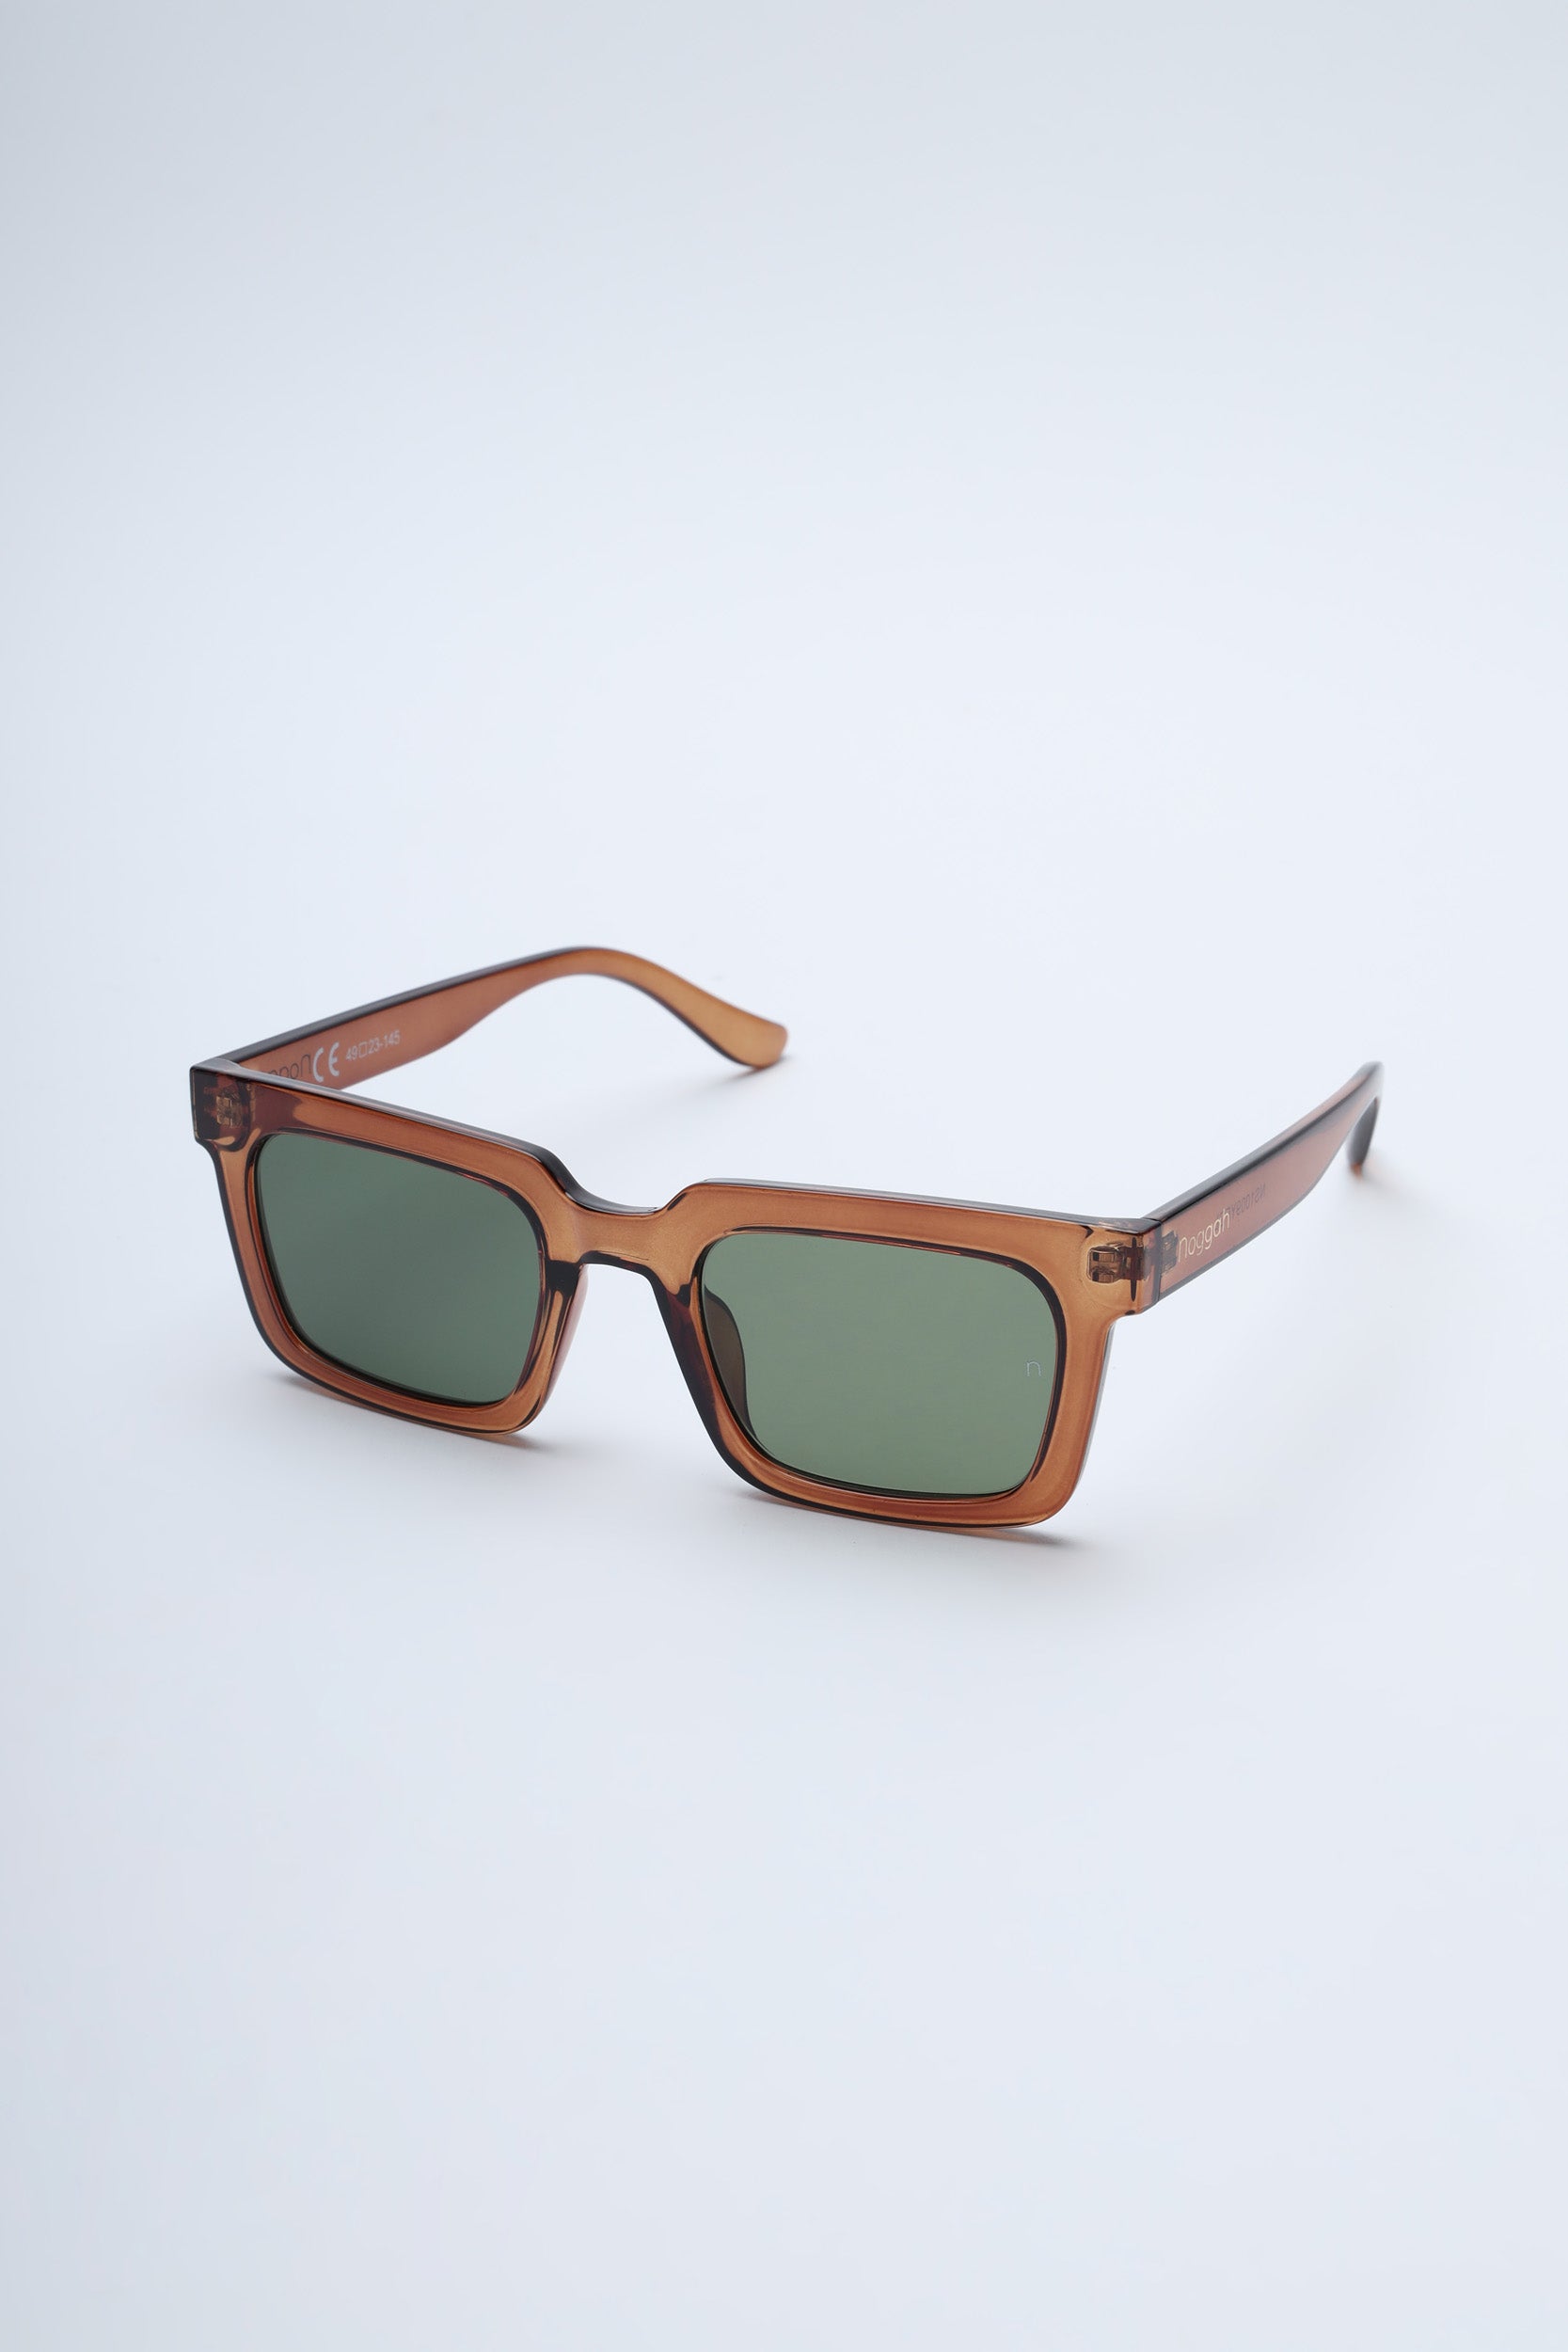 Joe Root Oakley Sunglasses 2024 | www.ussdyessdd880.com